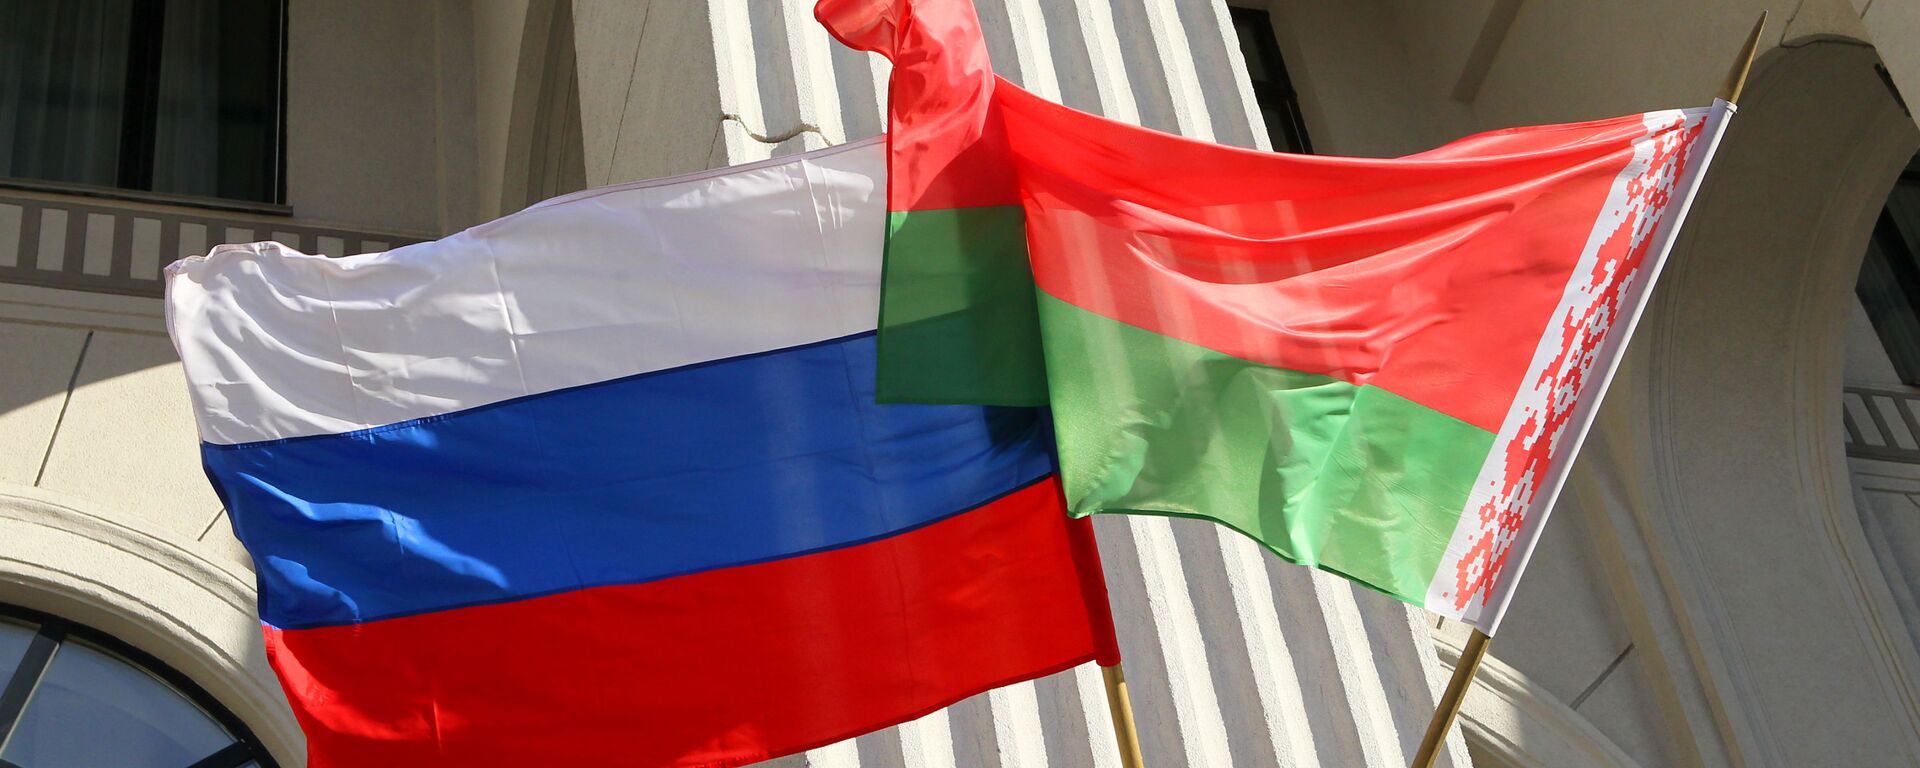 Rusijos ir Baltarusijos vėliavos - Sputnik Lietuva, 1920, 02.07.2021